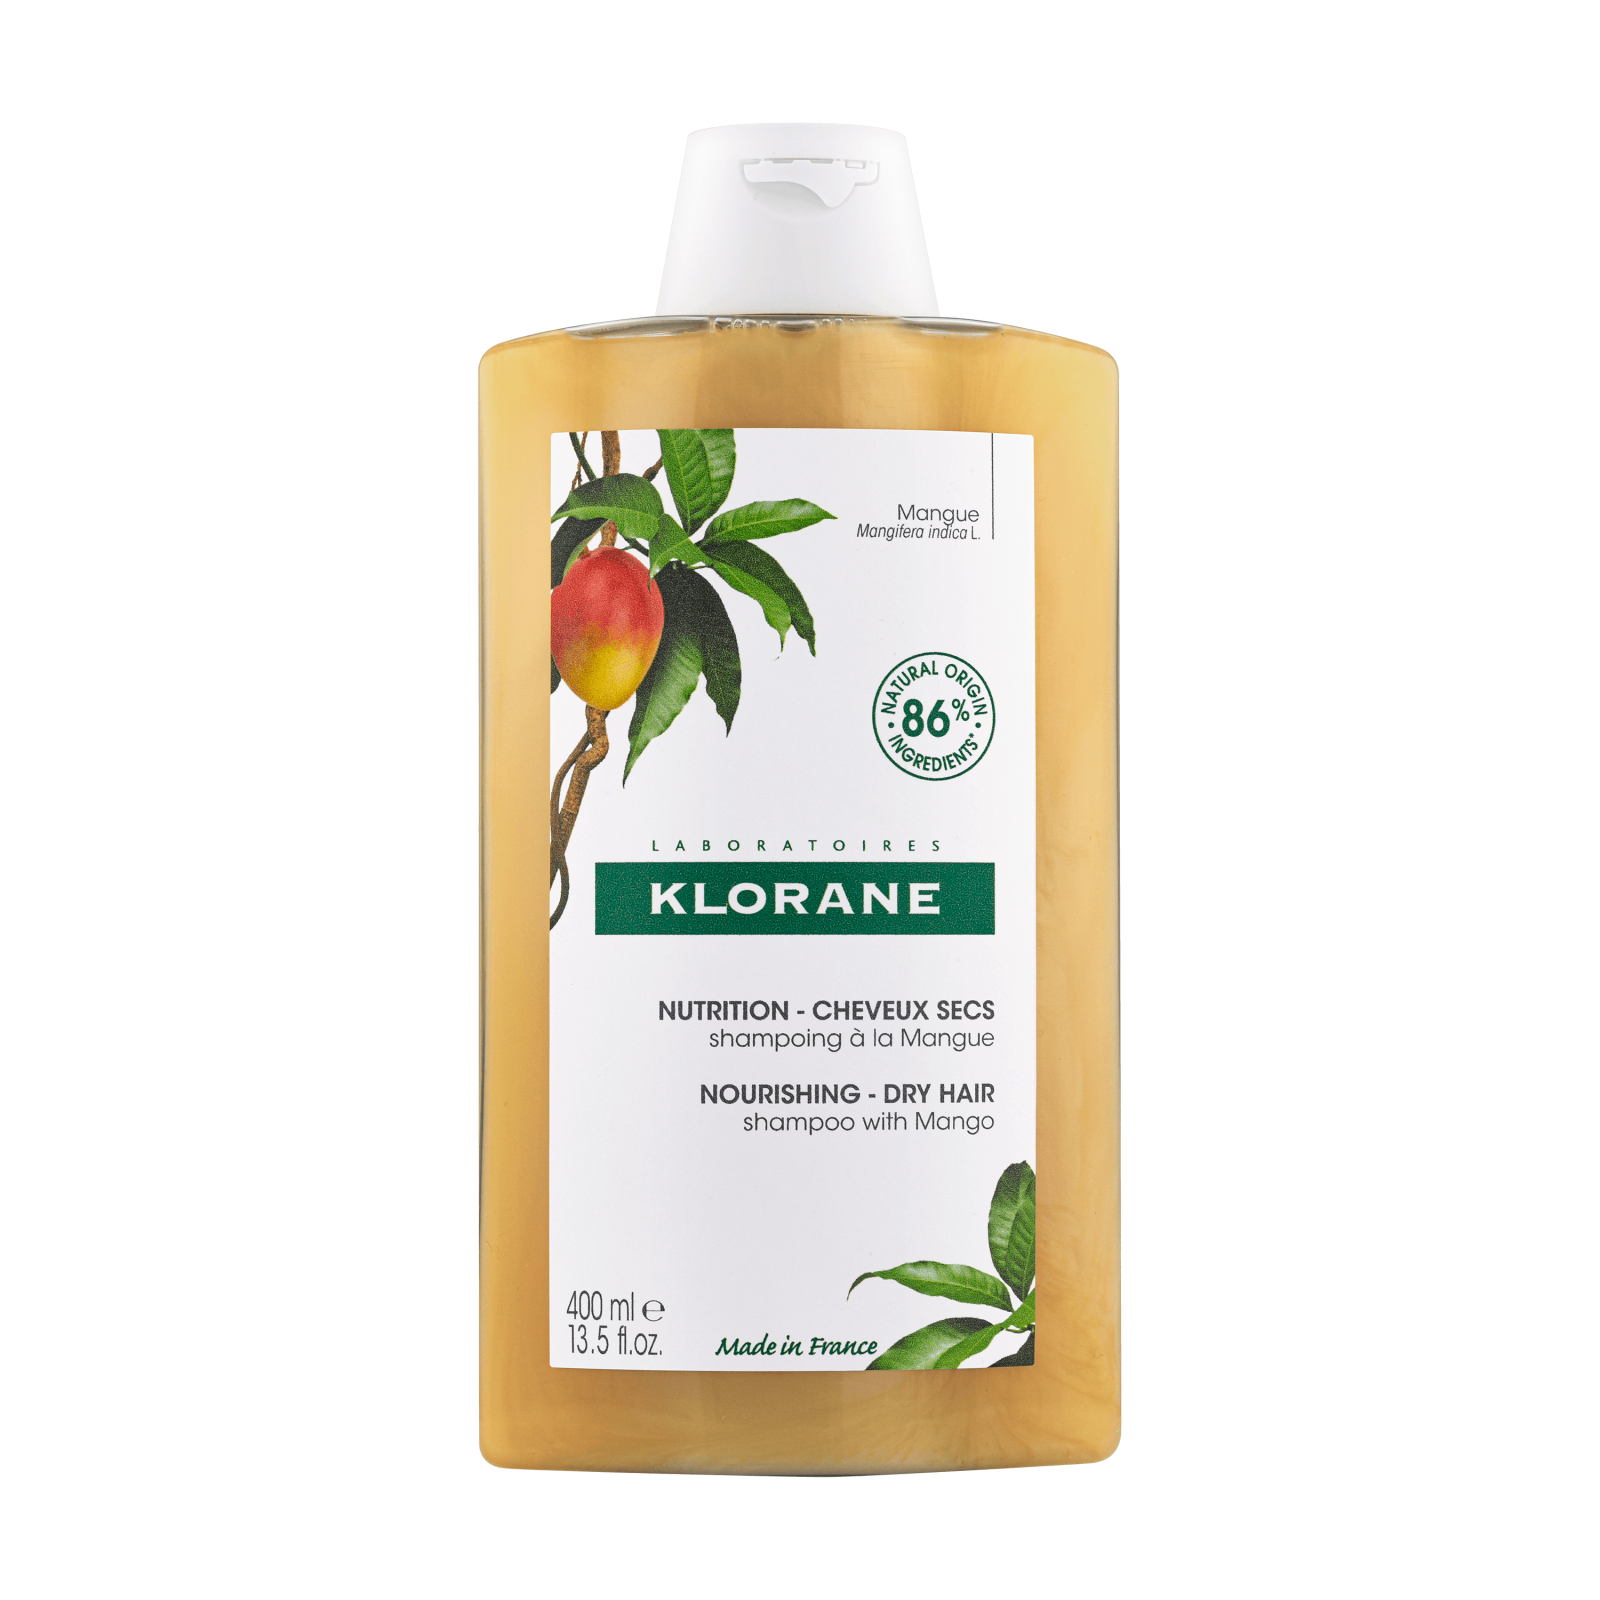 Sampon Klorane cu extract de mango pentru par uscat, 400ml